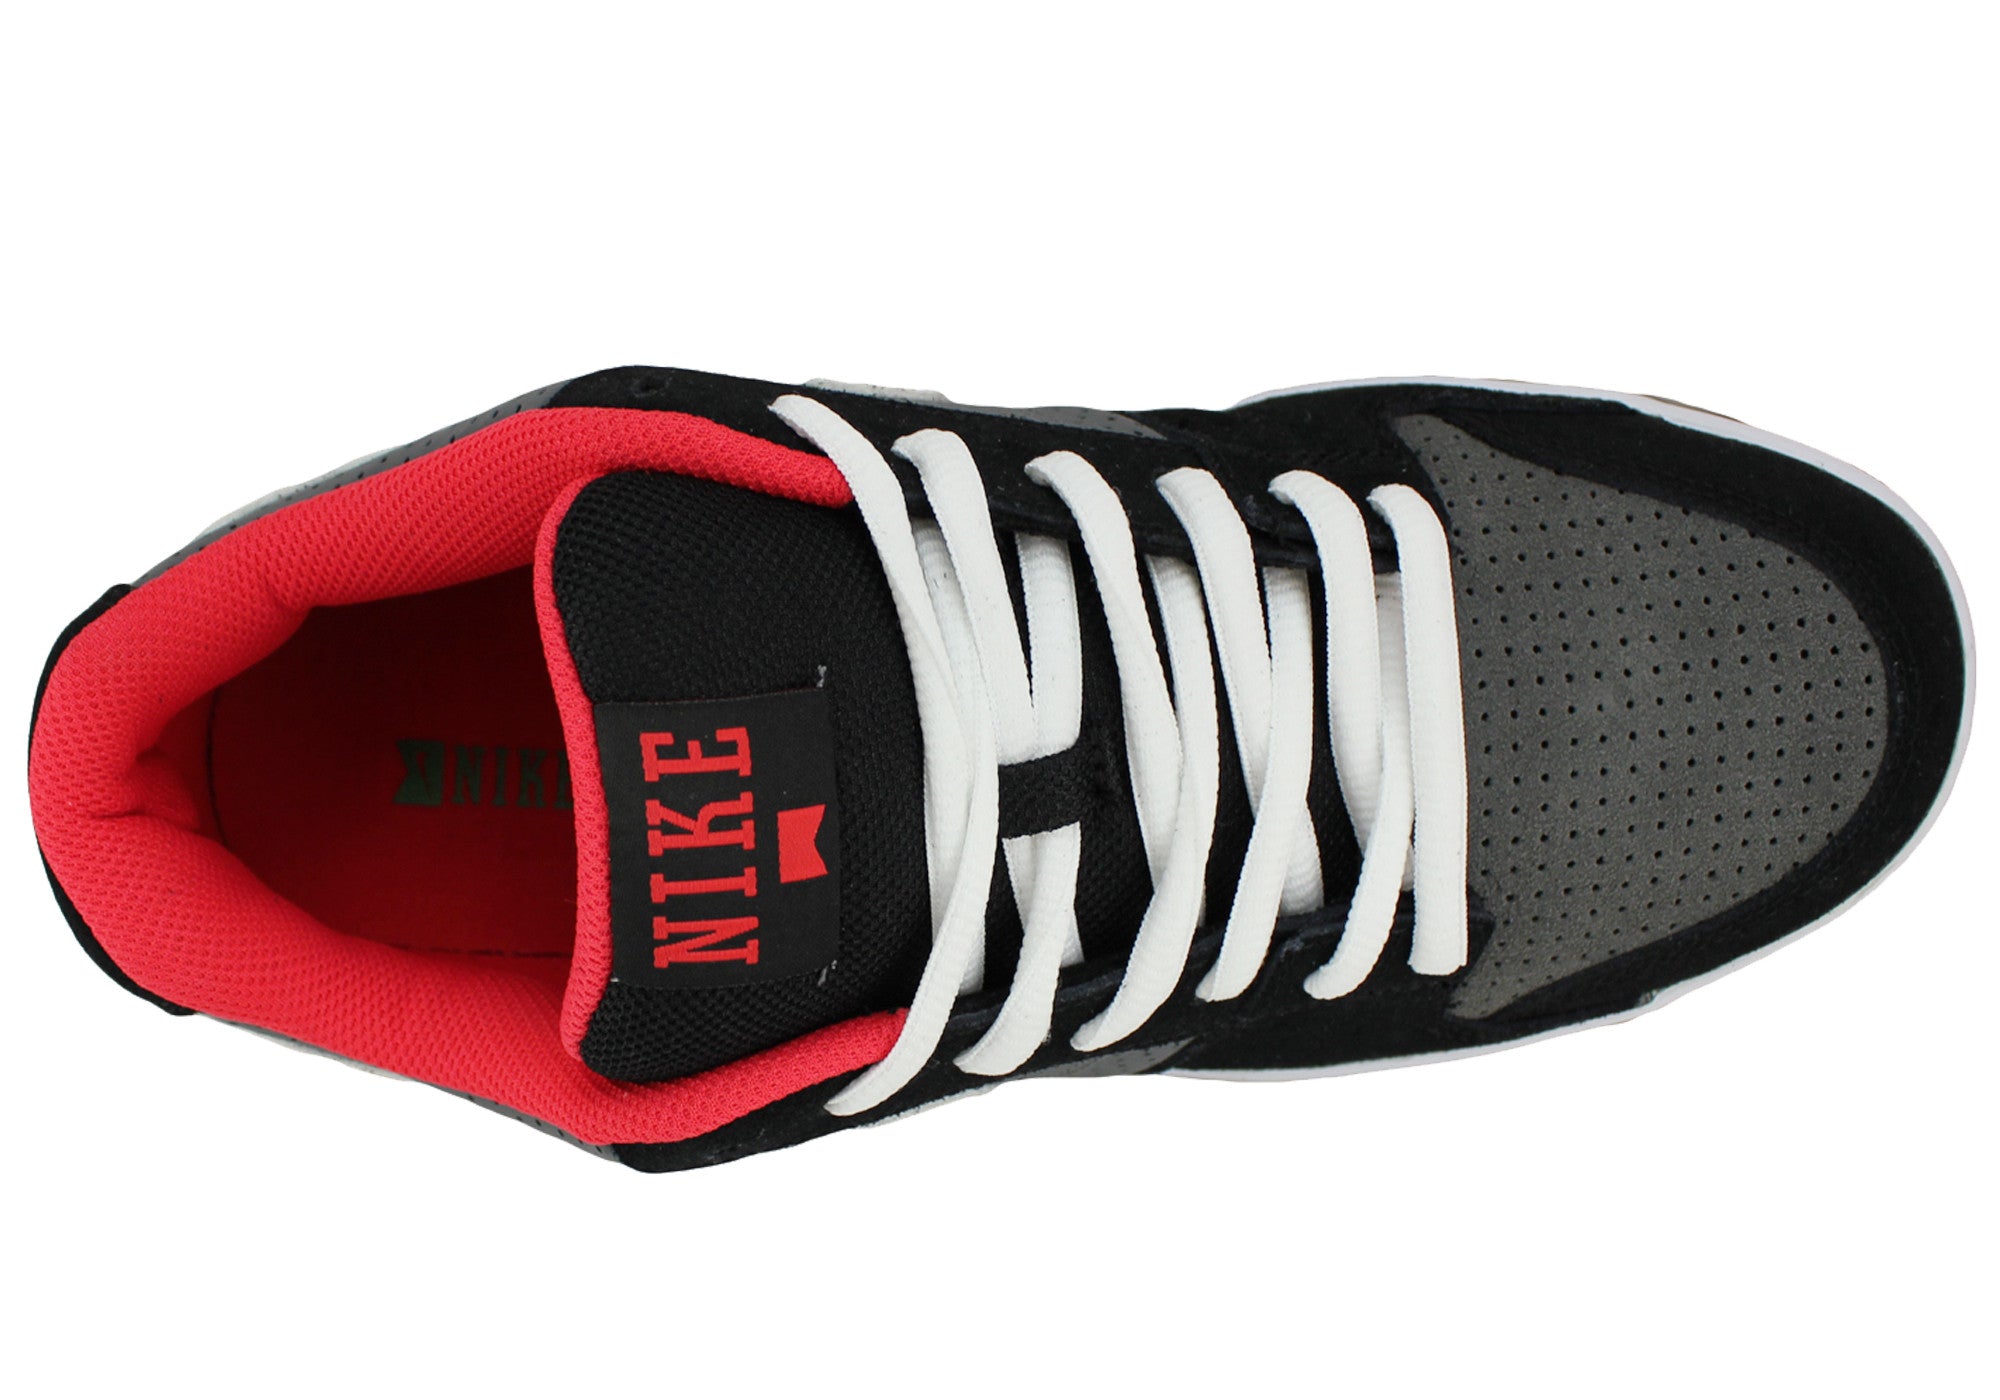 Nike Ruckus Low Mens Casual Shoes